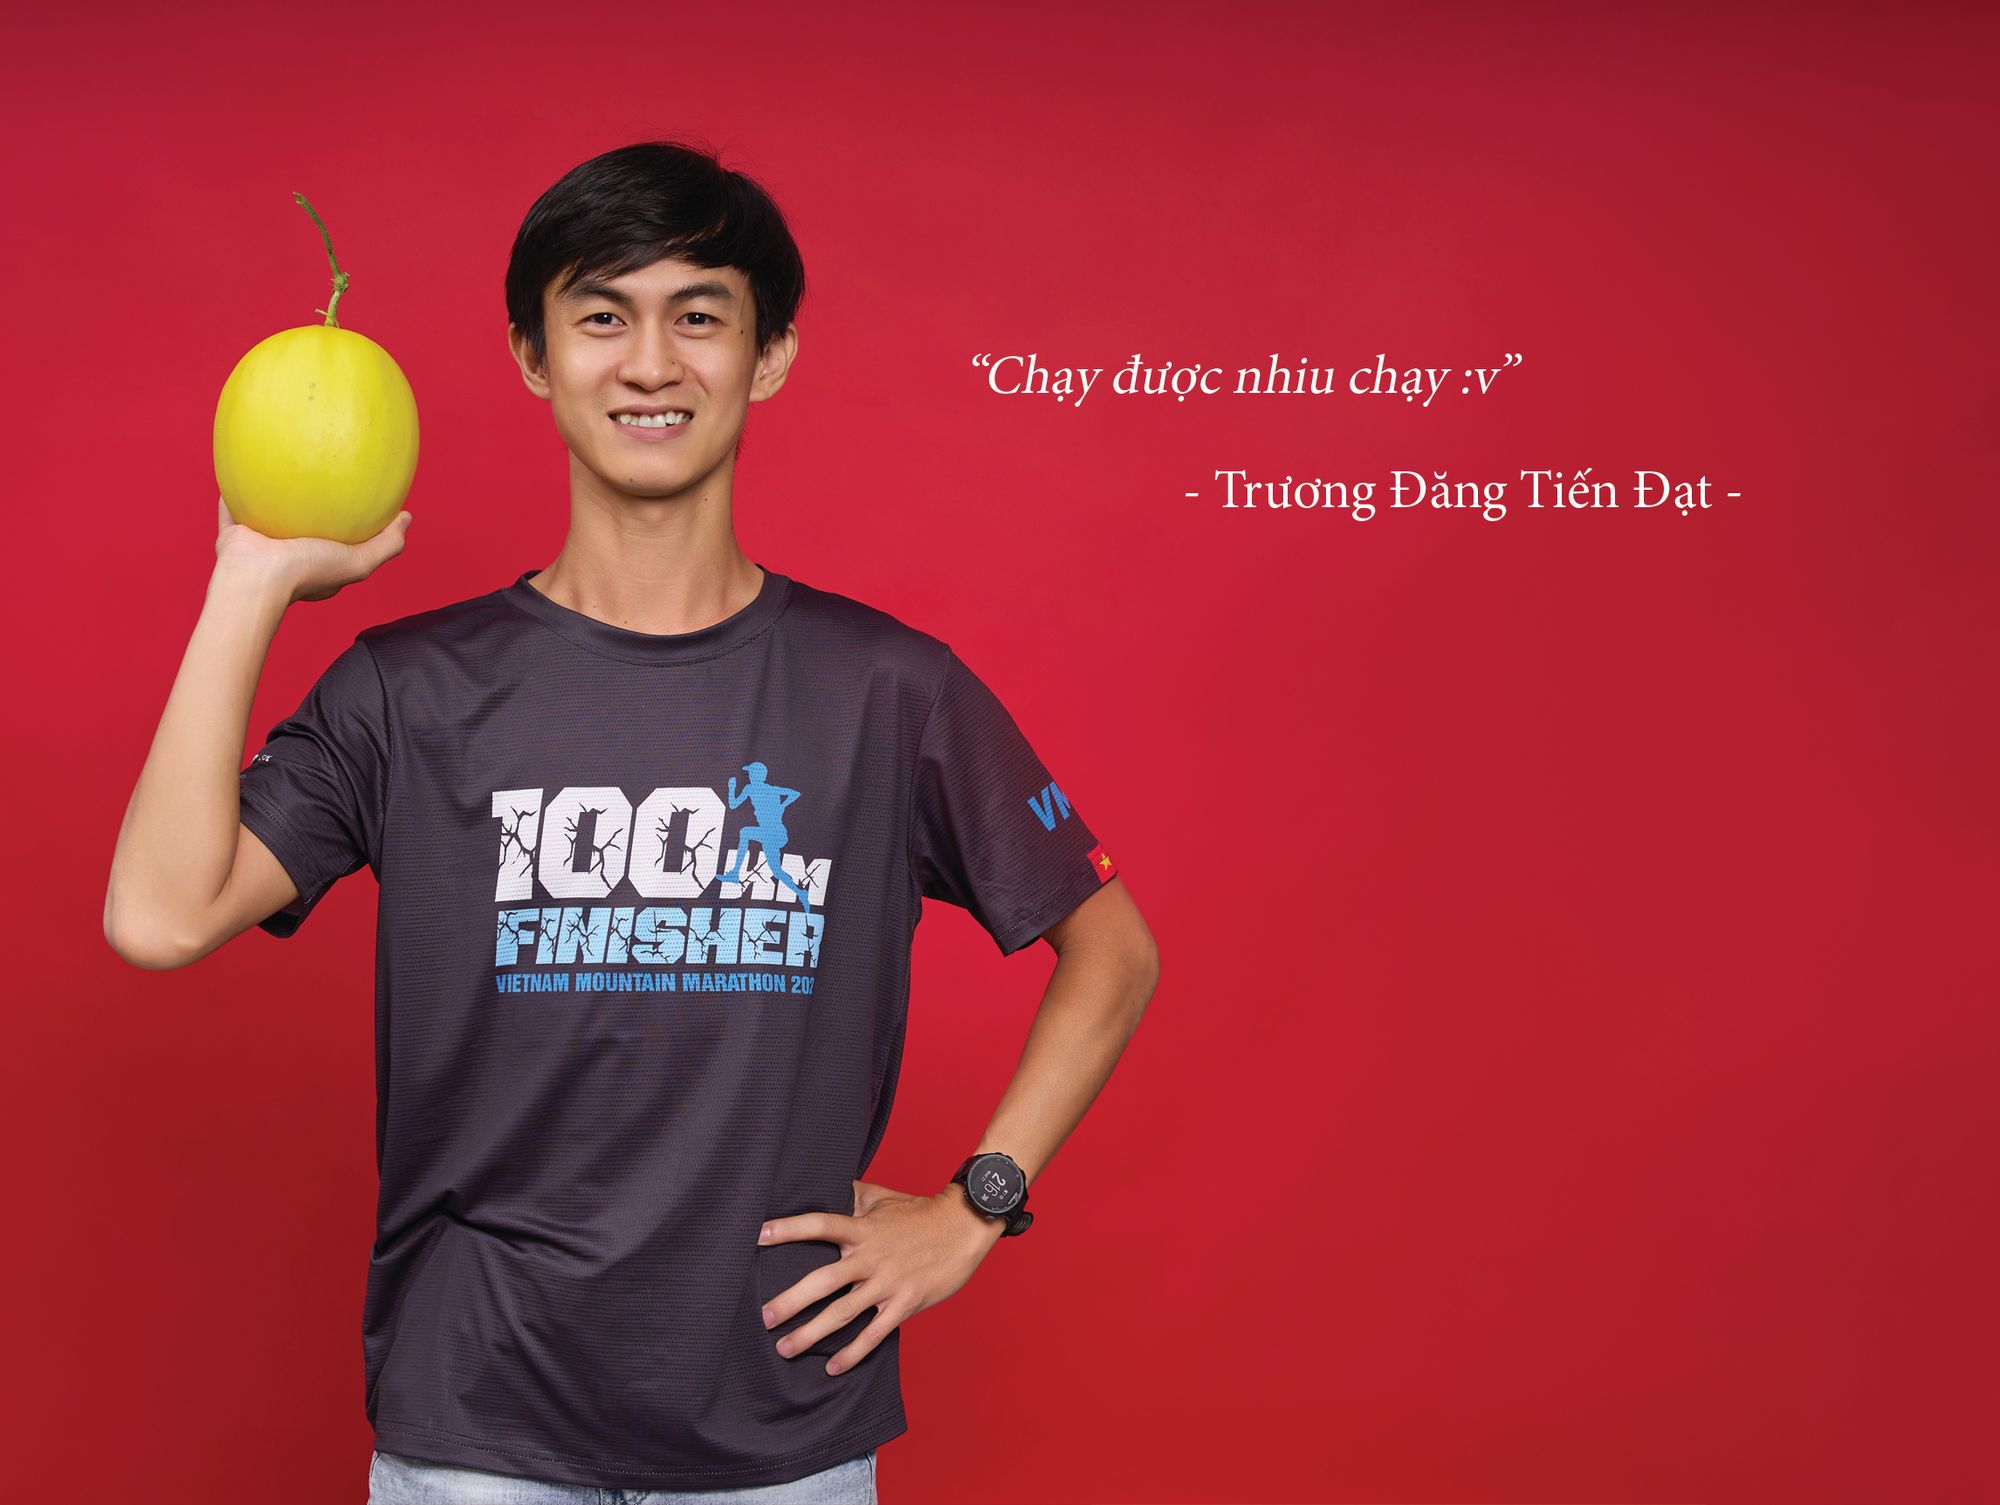 [Vietnamese Blog] Bí mật của người chạy 100km | People at Chợ Tốt 09